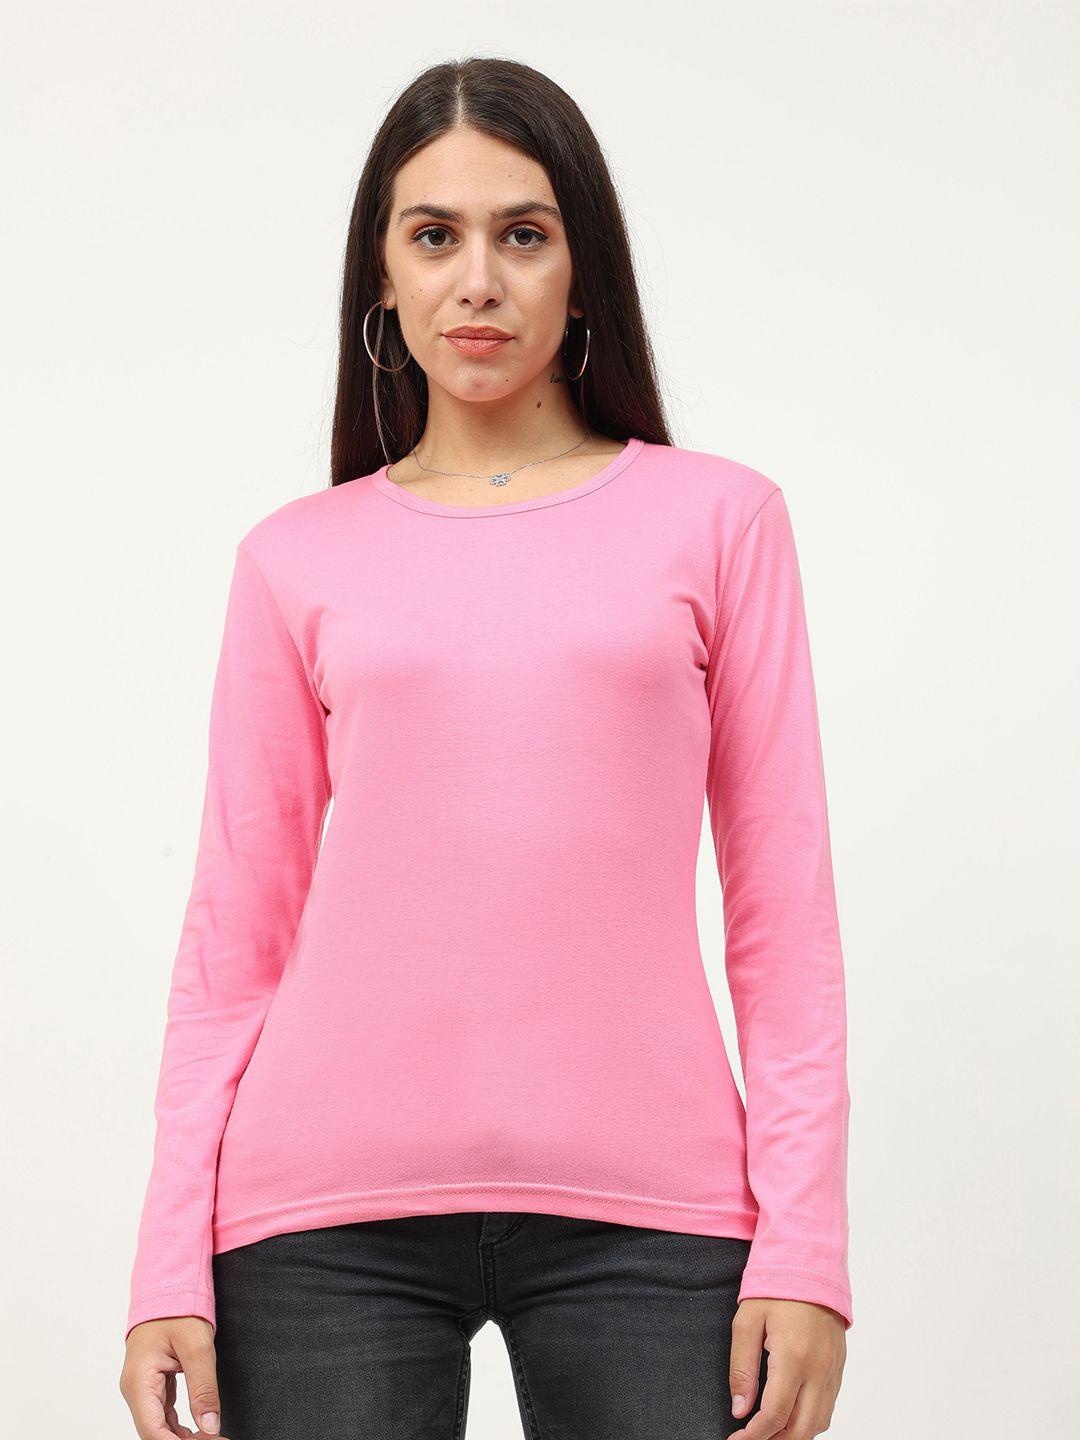 fleximaa-women-pink-t-shirt